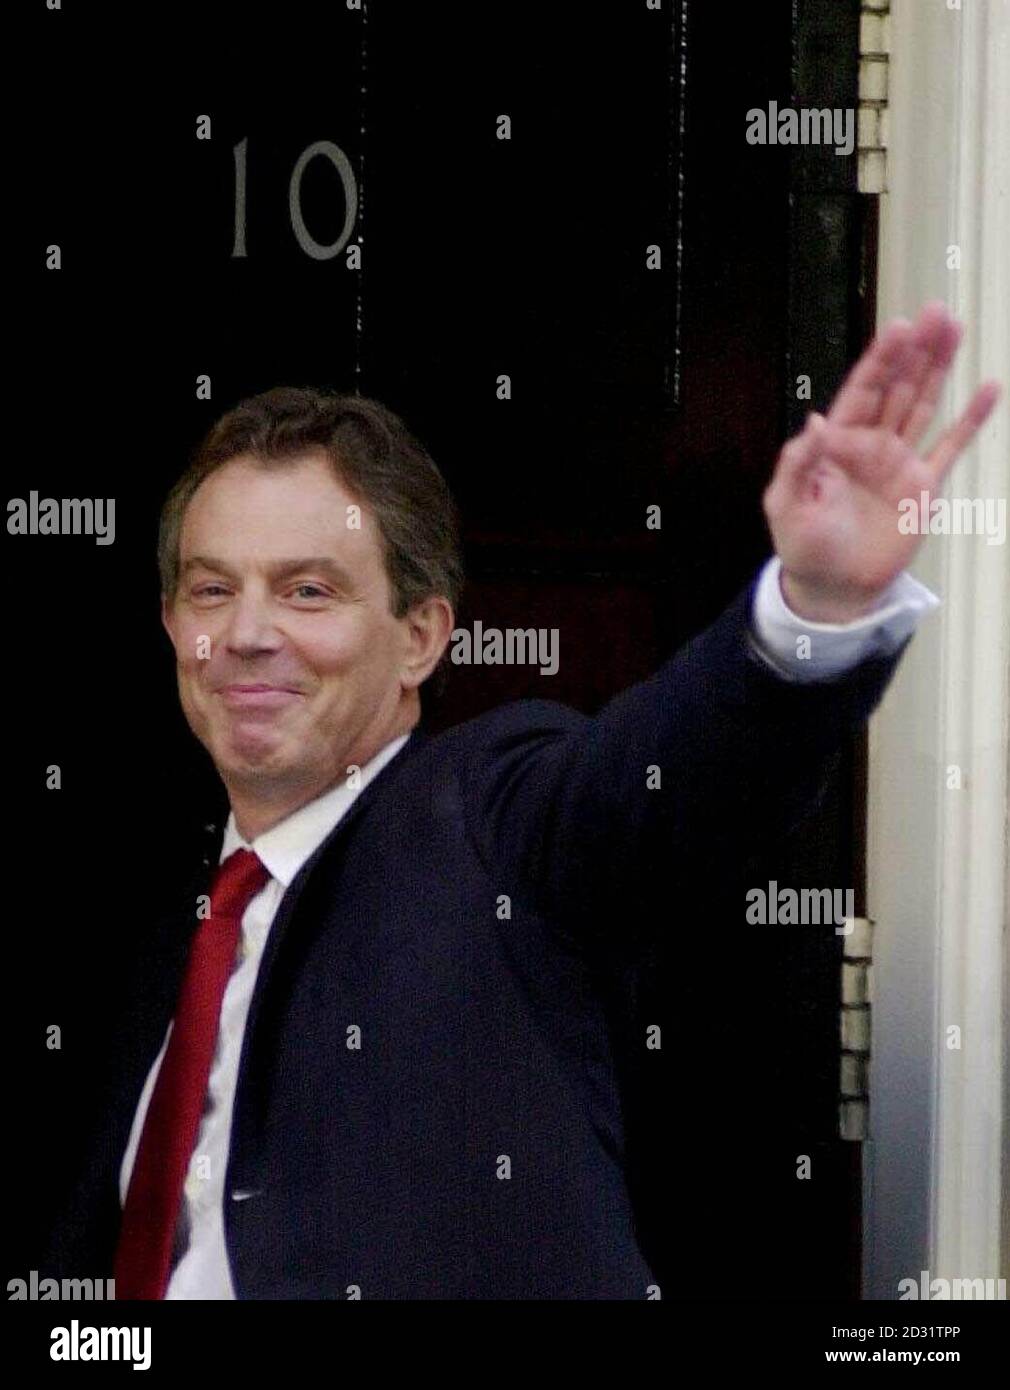 Il primo ministro britannico Tony Blair e sua moglie Cherie arrivano alla sua residenza ufficiale di Londra a Downing Street dopo aver vinto le elezioni generali e aver ottenuto una seconda vittoria storica della frana laburista. Foto Stock